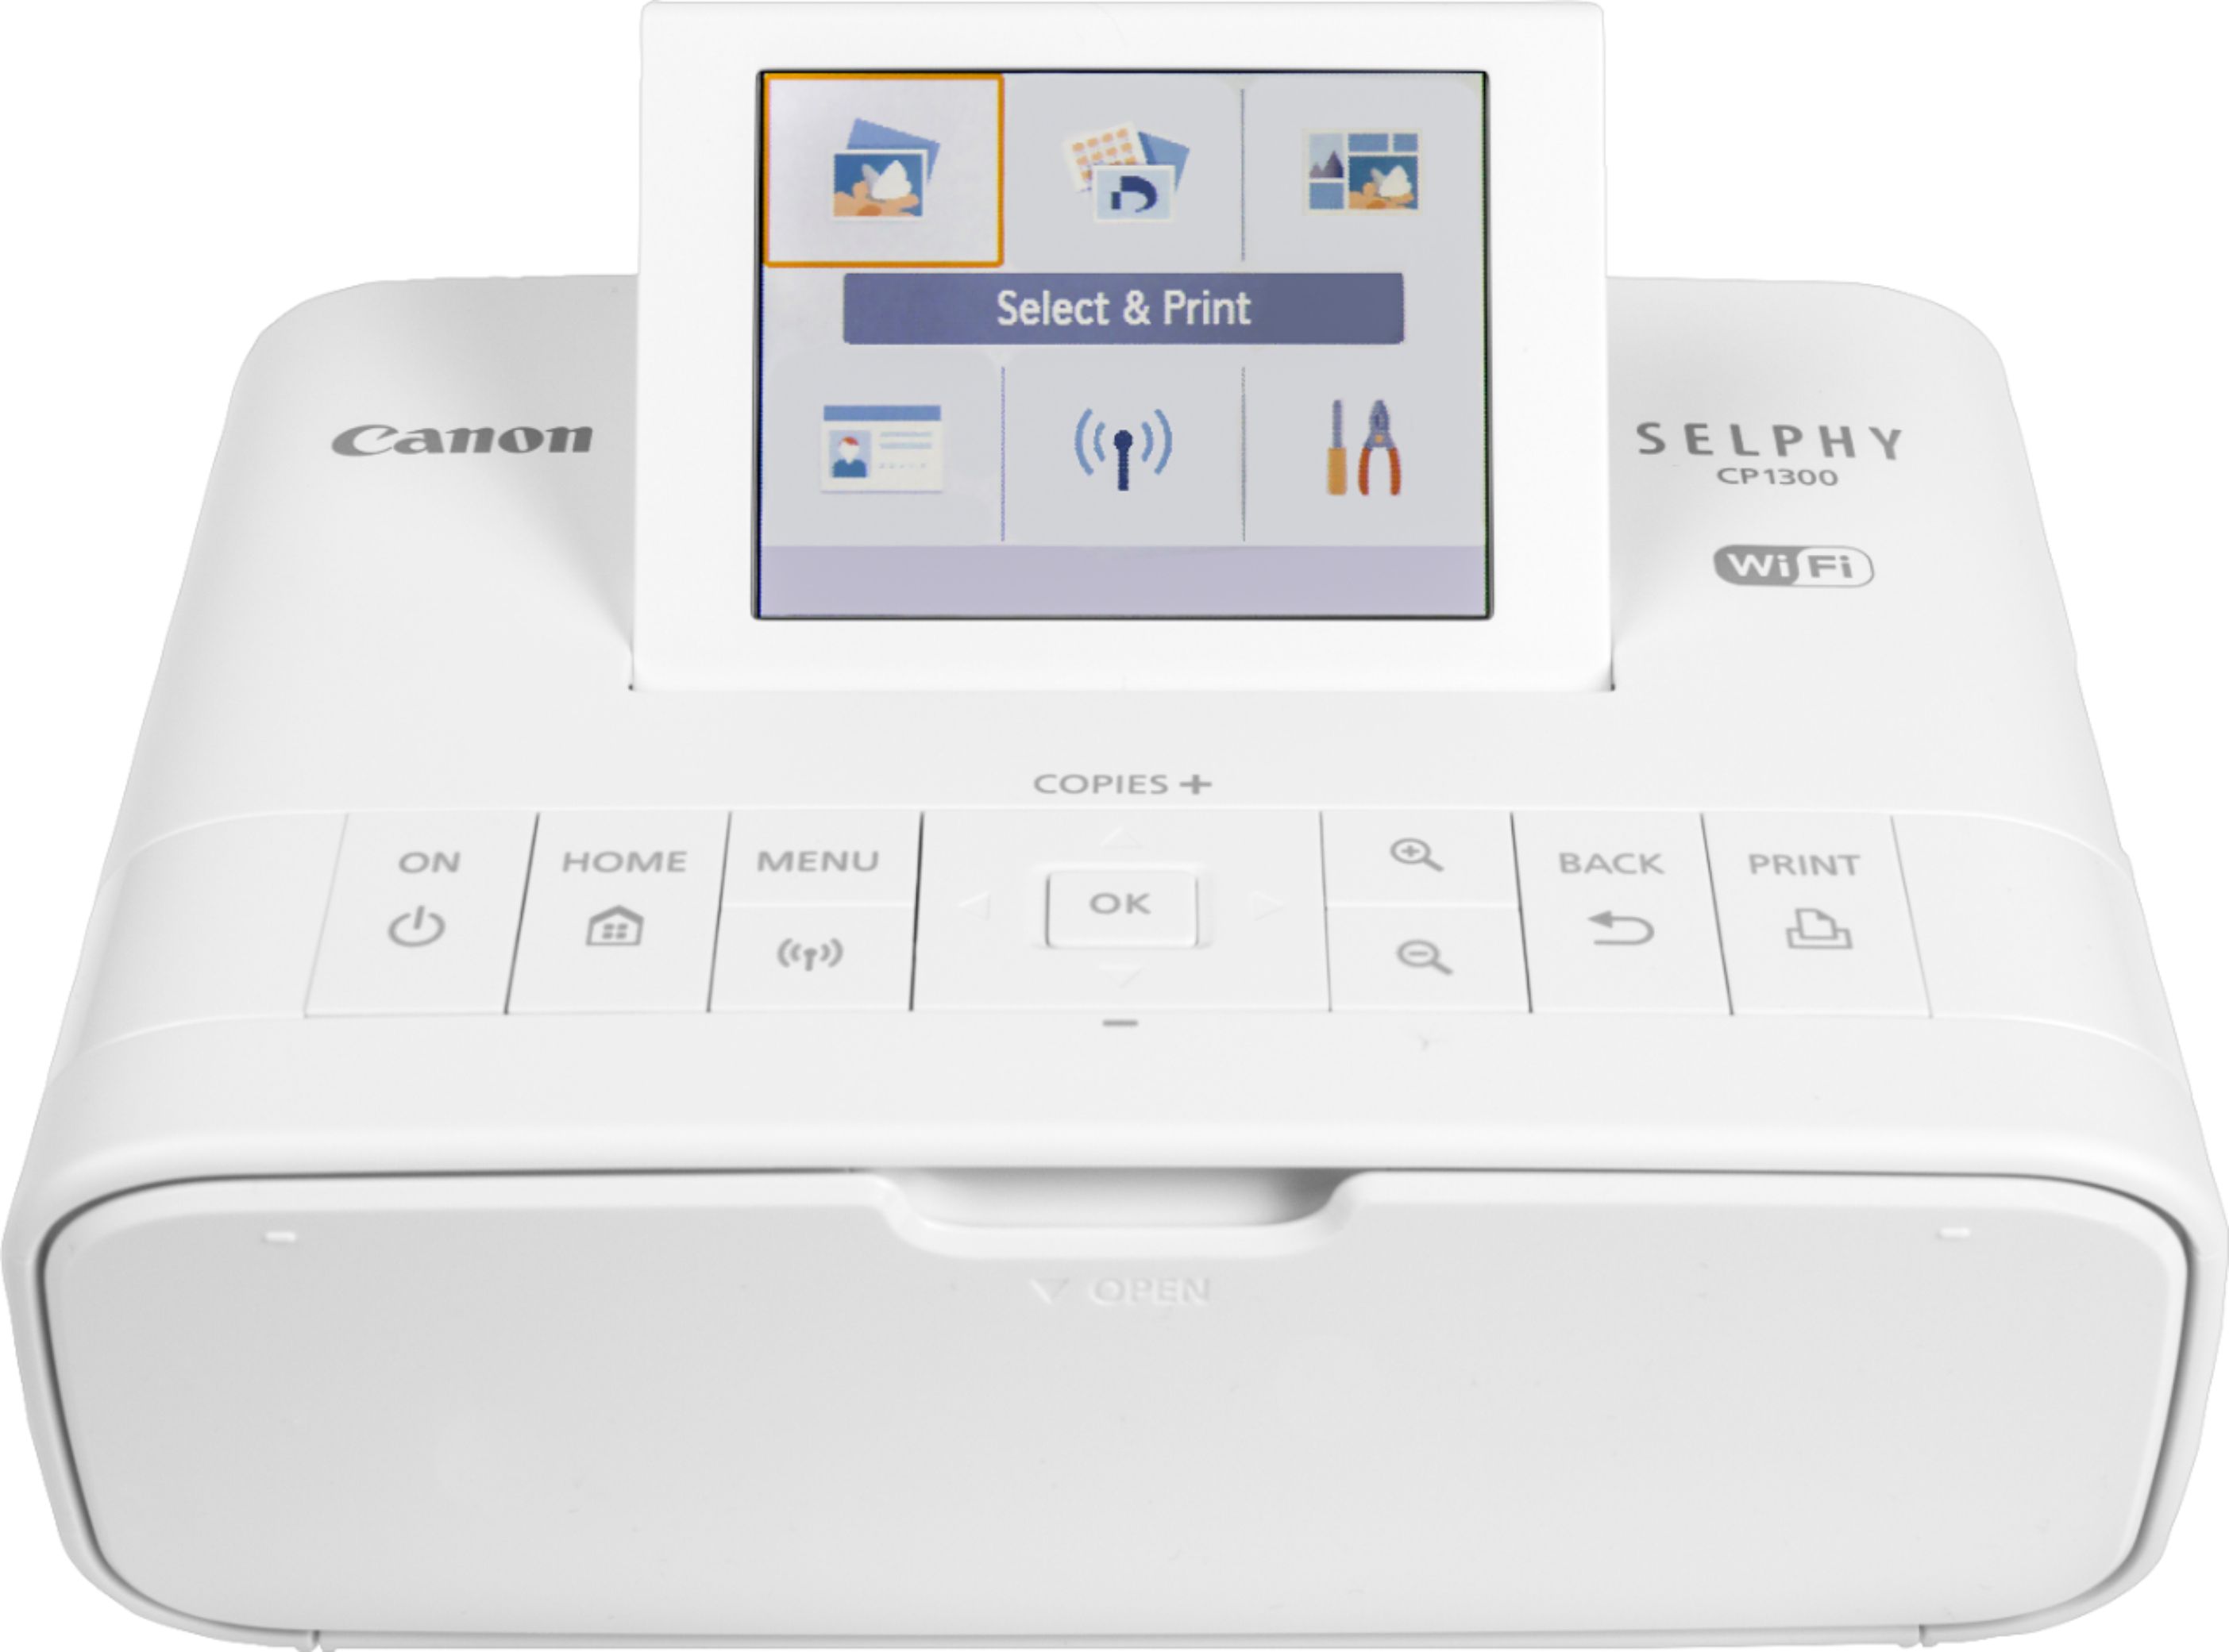  Canon® SELPHY™ CP1300 - Impresora fotográfica compacta